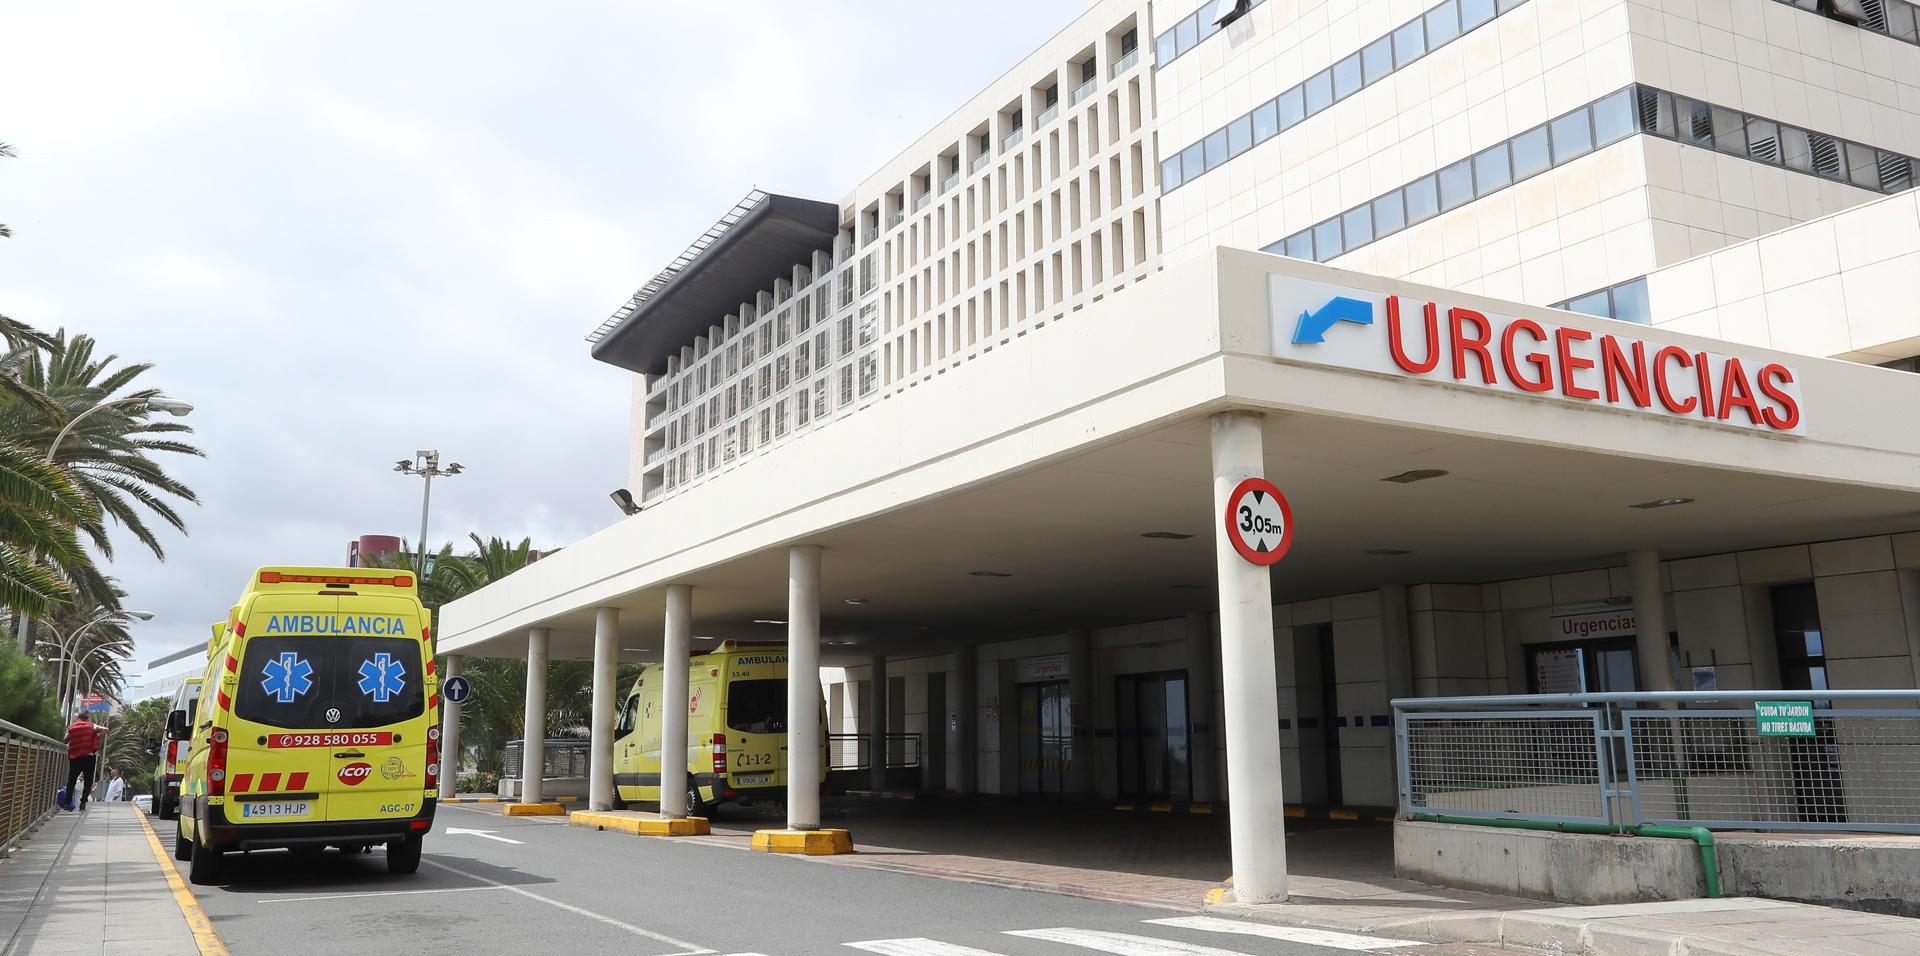 Imagen de archivo de la puerta de Urgencias del Hospital Universitario Insular de Gran Canaria este jueves. EFE/ Elvira Urquijo A.